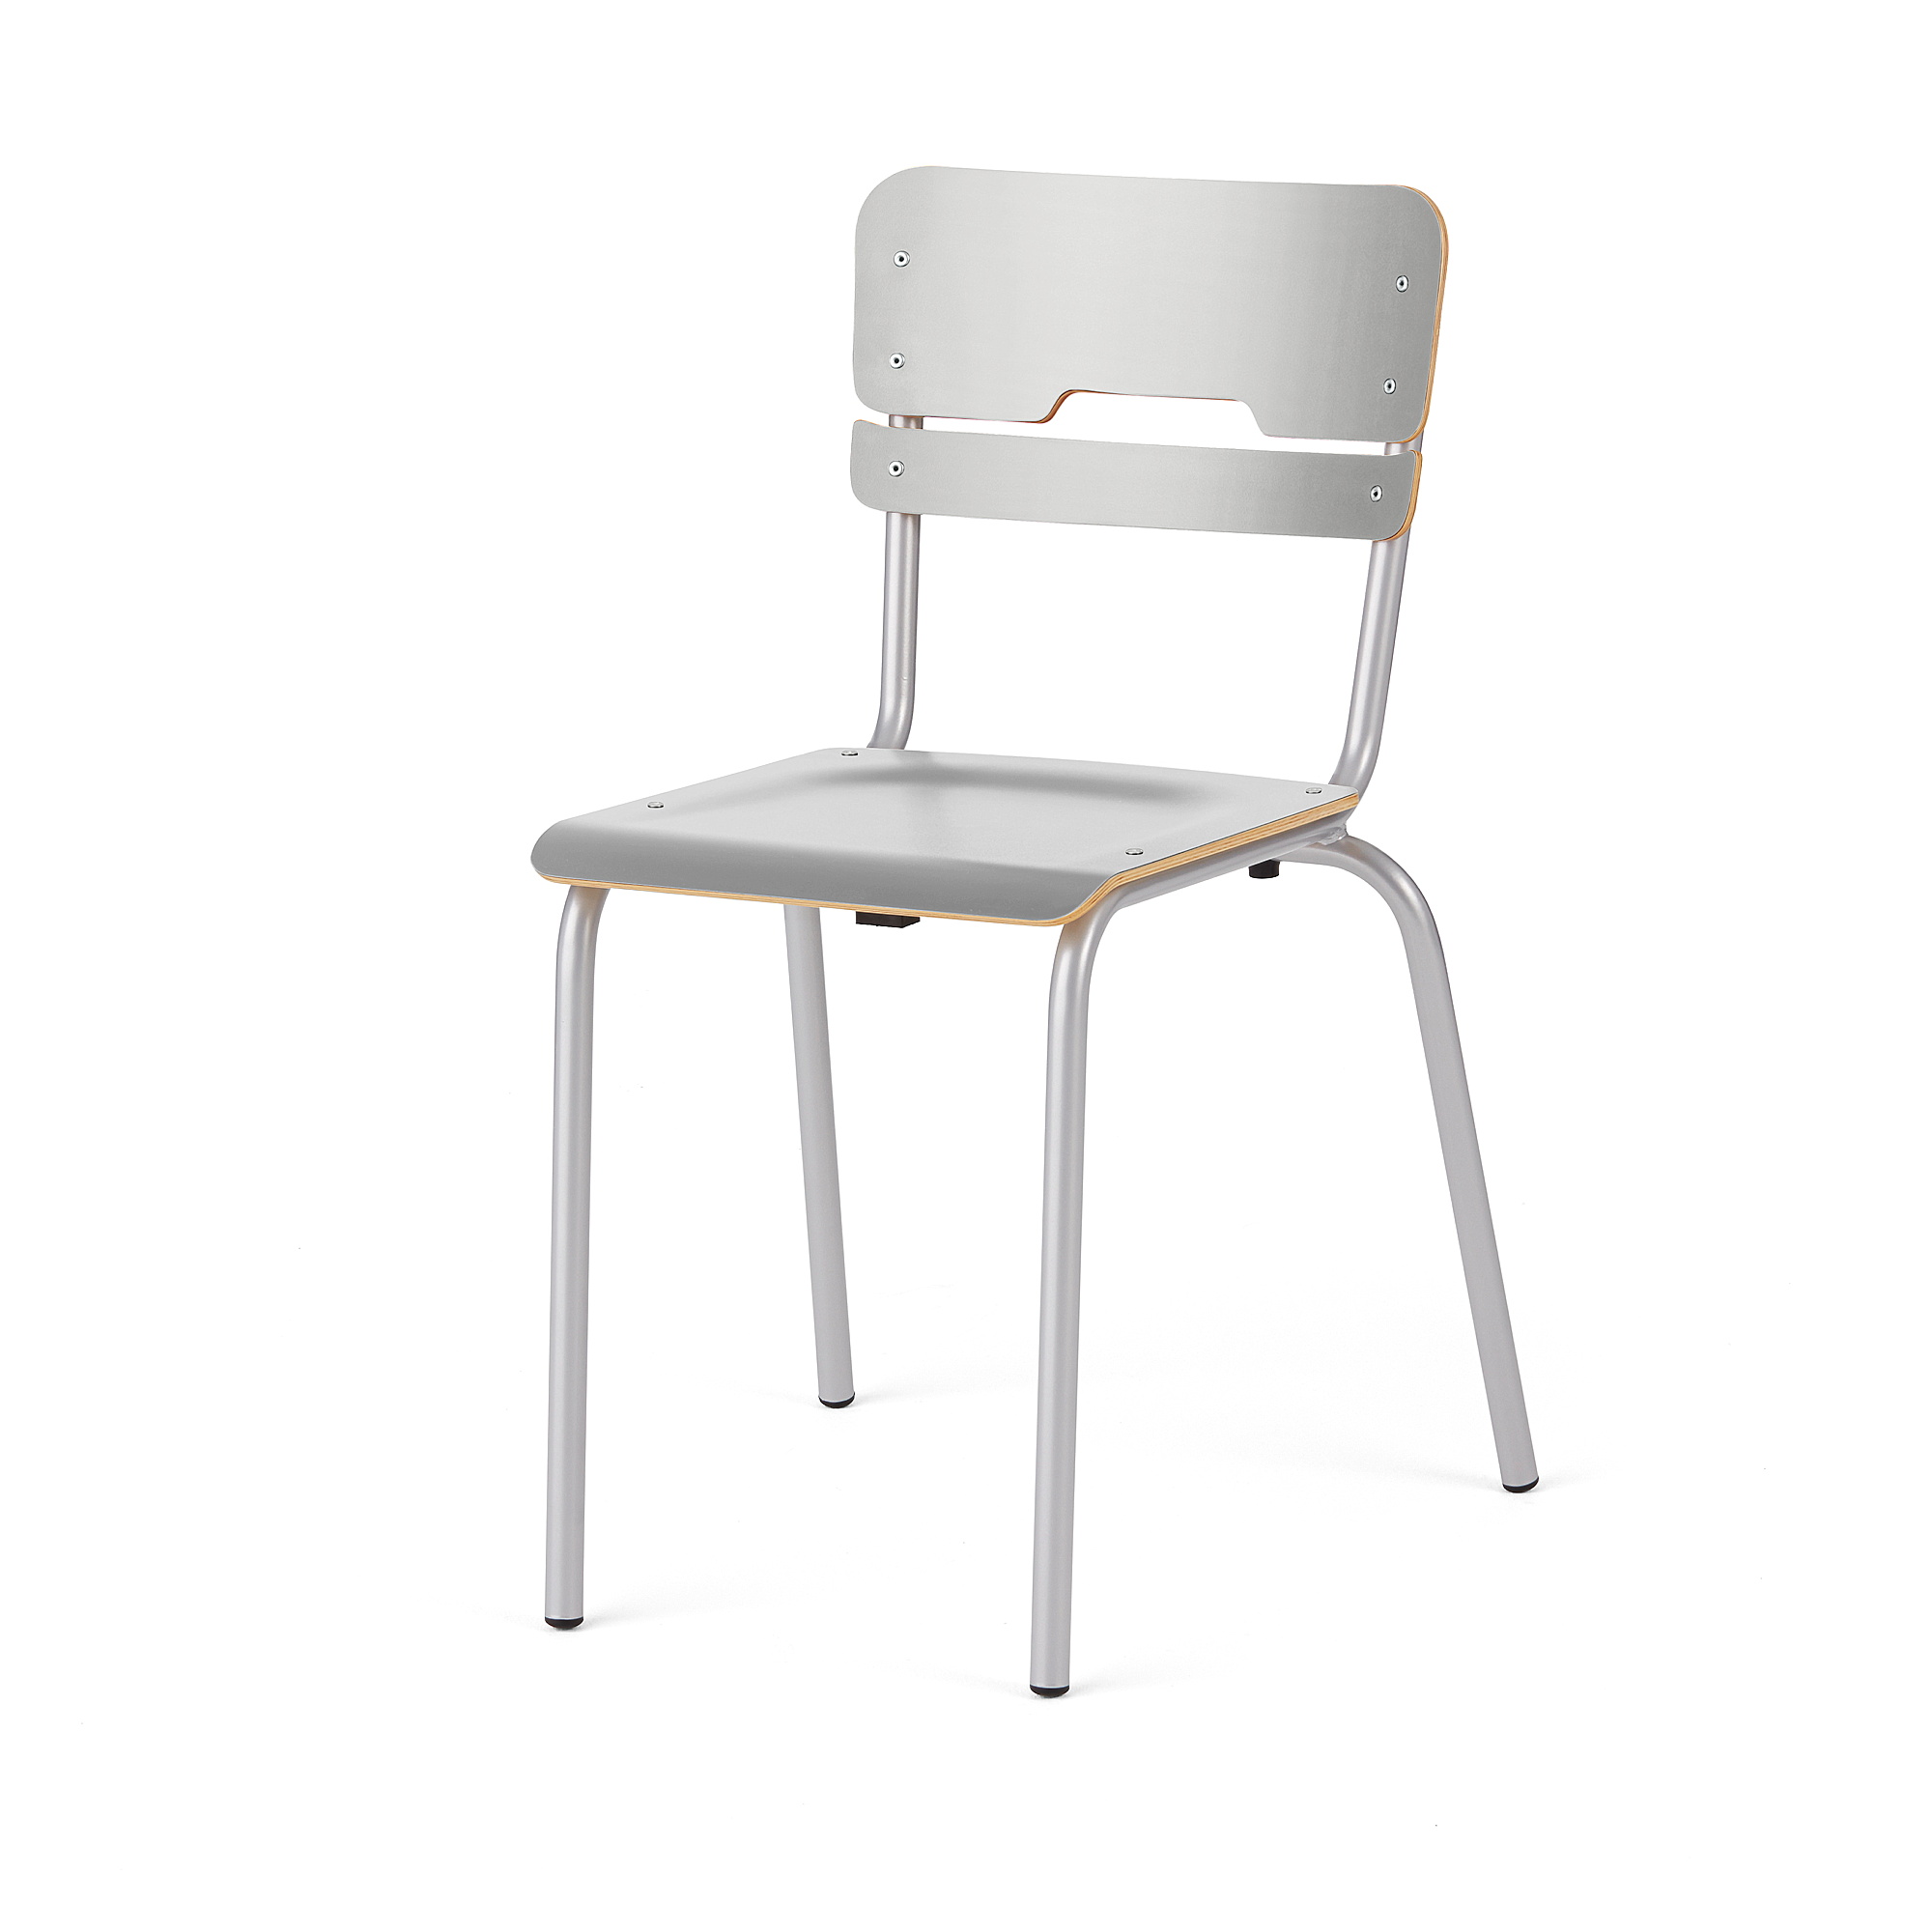 E-shop Školská stolička SCIENTIA, nízke sedadlo, V 460 mm, strieborná/šedá